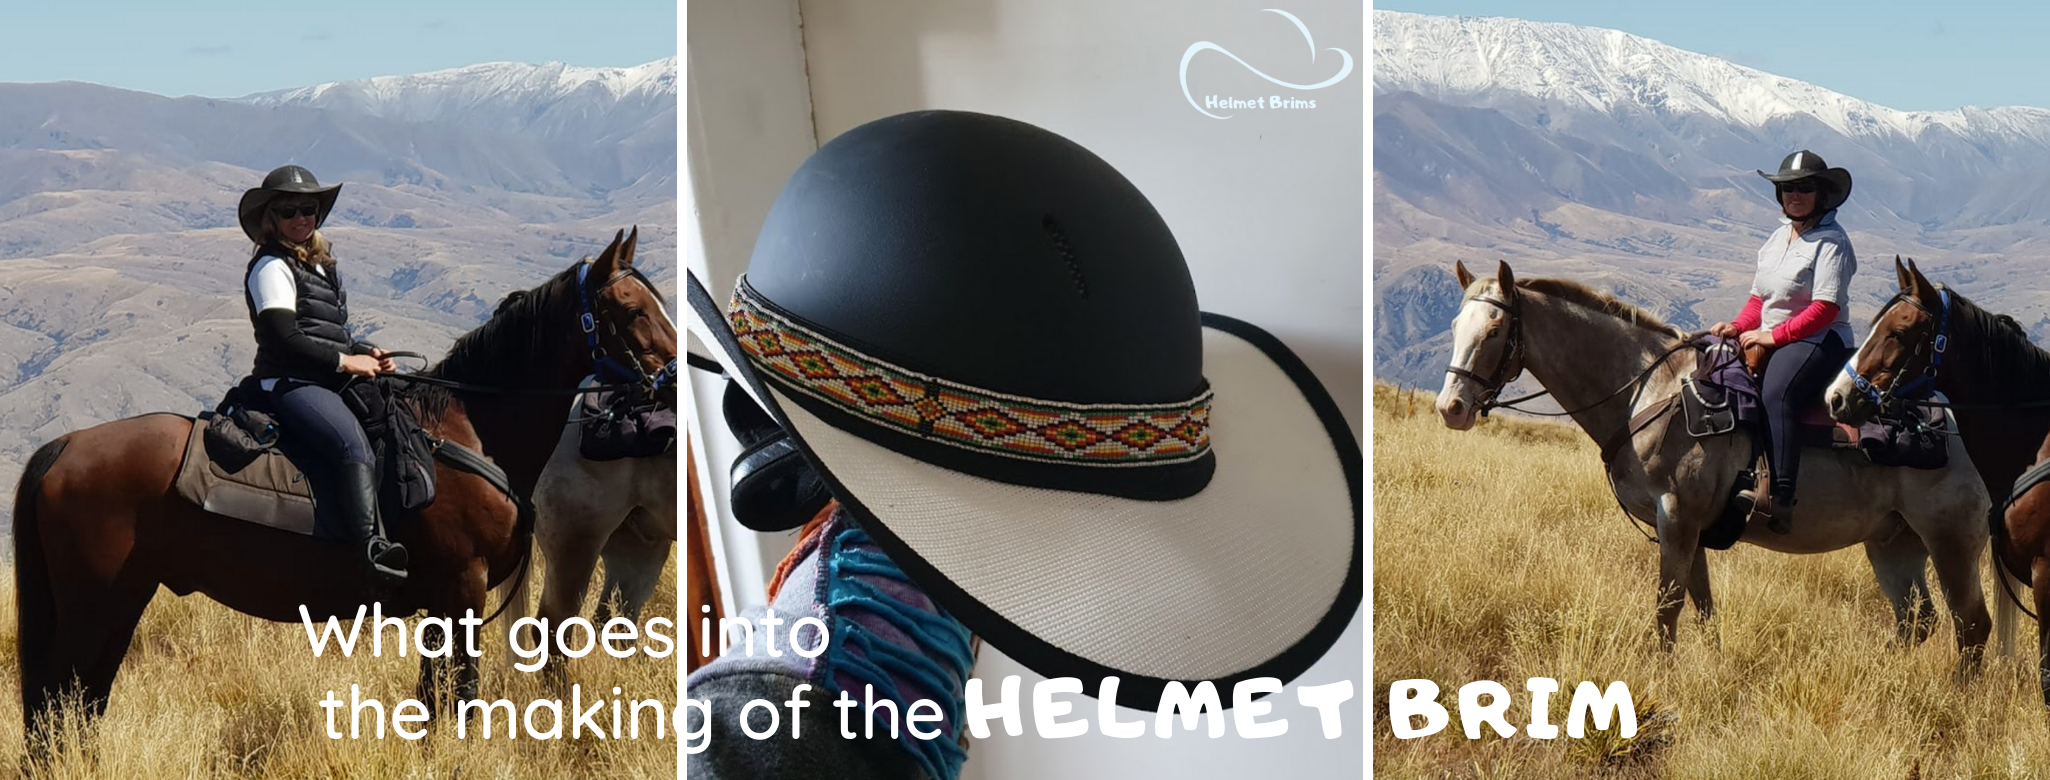 BLOG-helmet-brims-slide-show-cover-online-blayney-nsw-australian-made-making-of